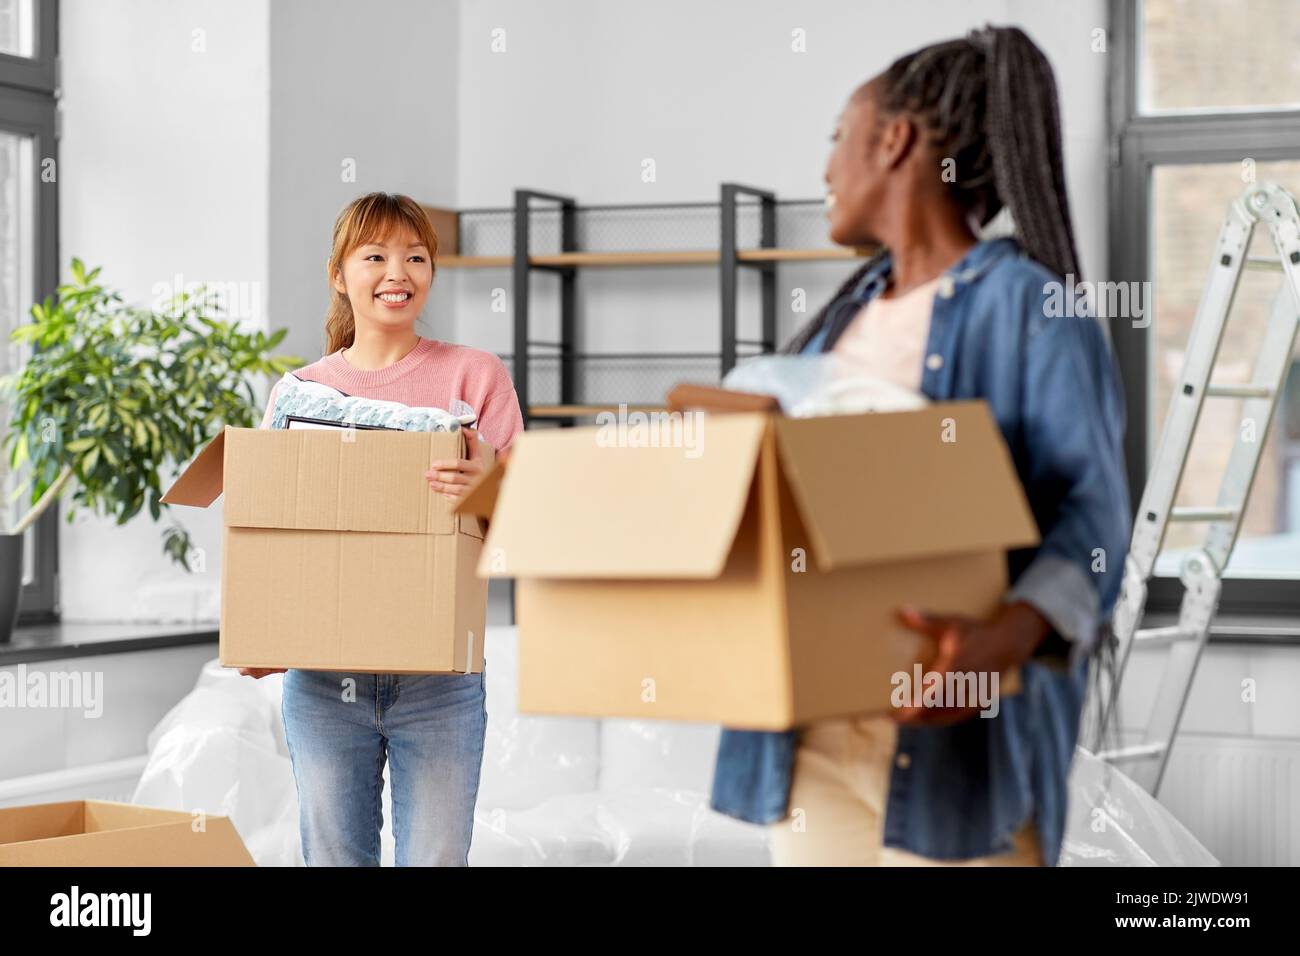 mujeres con cajas que se mudan a un nuevo hogar Foto de stock